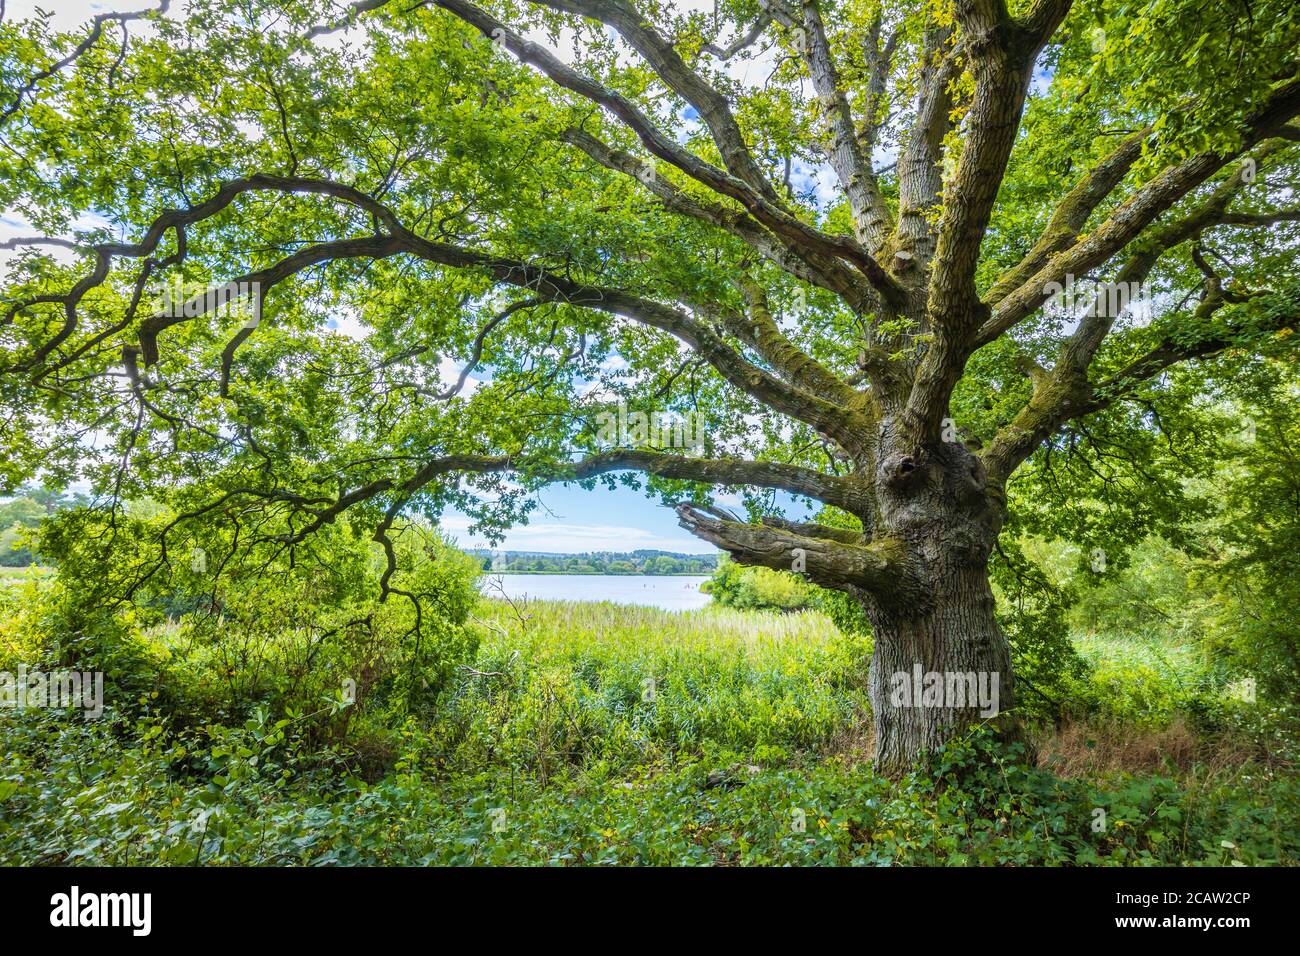 Eine gesunde alte 250 Jahre alte Eiche (Quercus robur) in voller Blattstruktur am Frensham Little Pond, einem beliebten Schönheitsort in Surrey, Südostengland Stockfoto